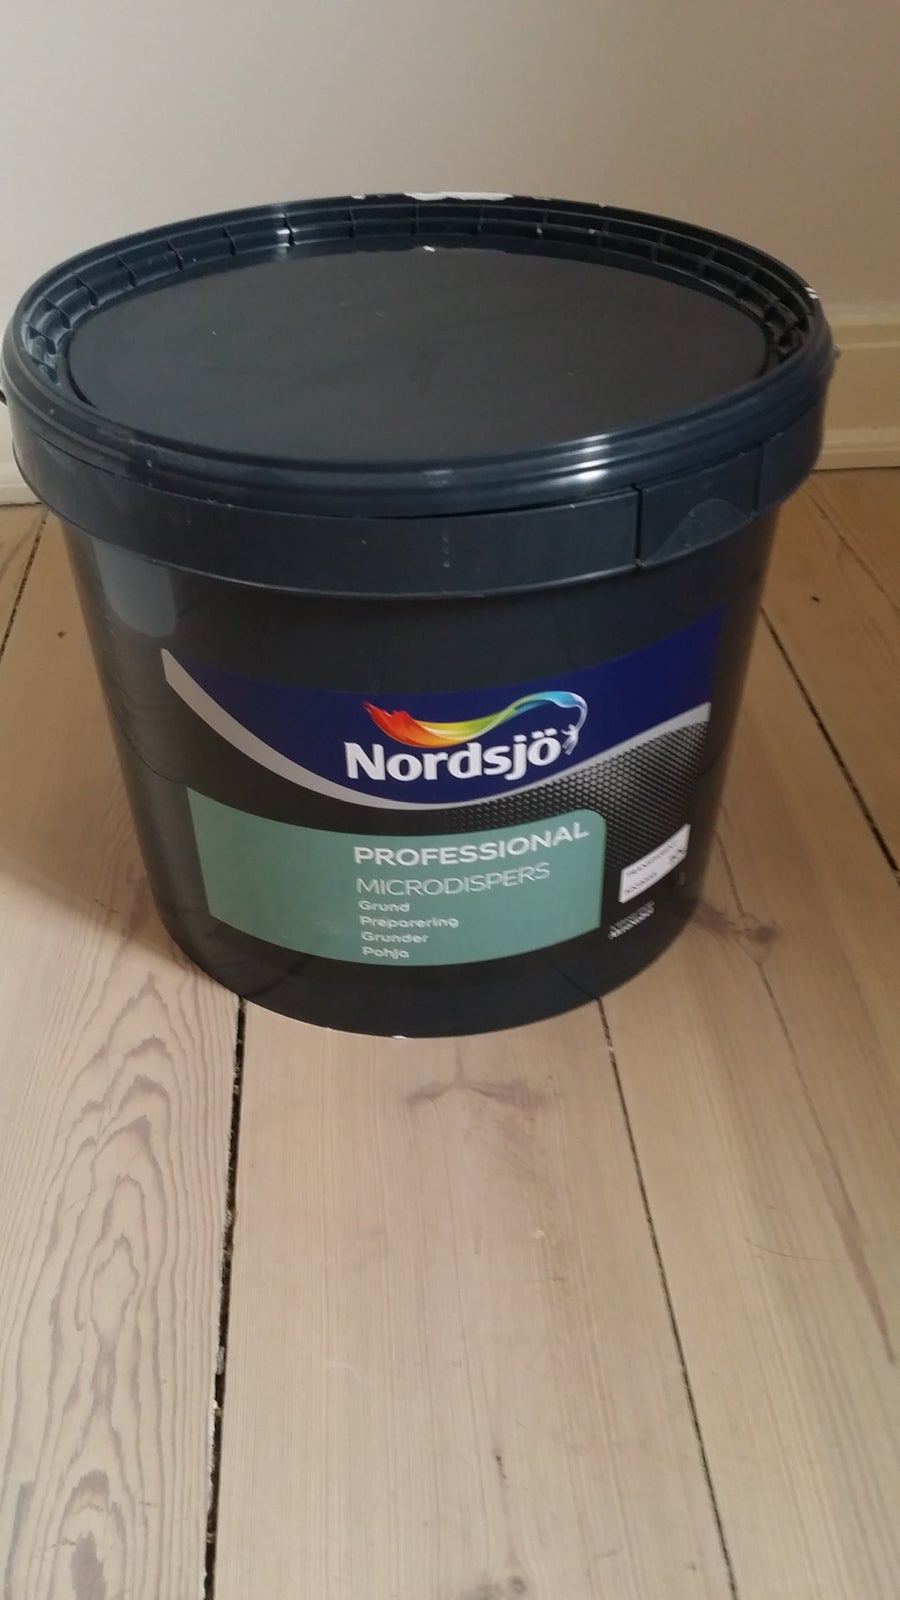 Forankringsgrunder/ Microdispers, Nordsjö, 6.5 liter